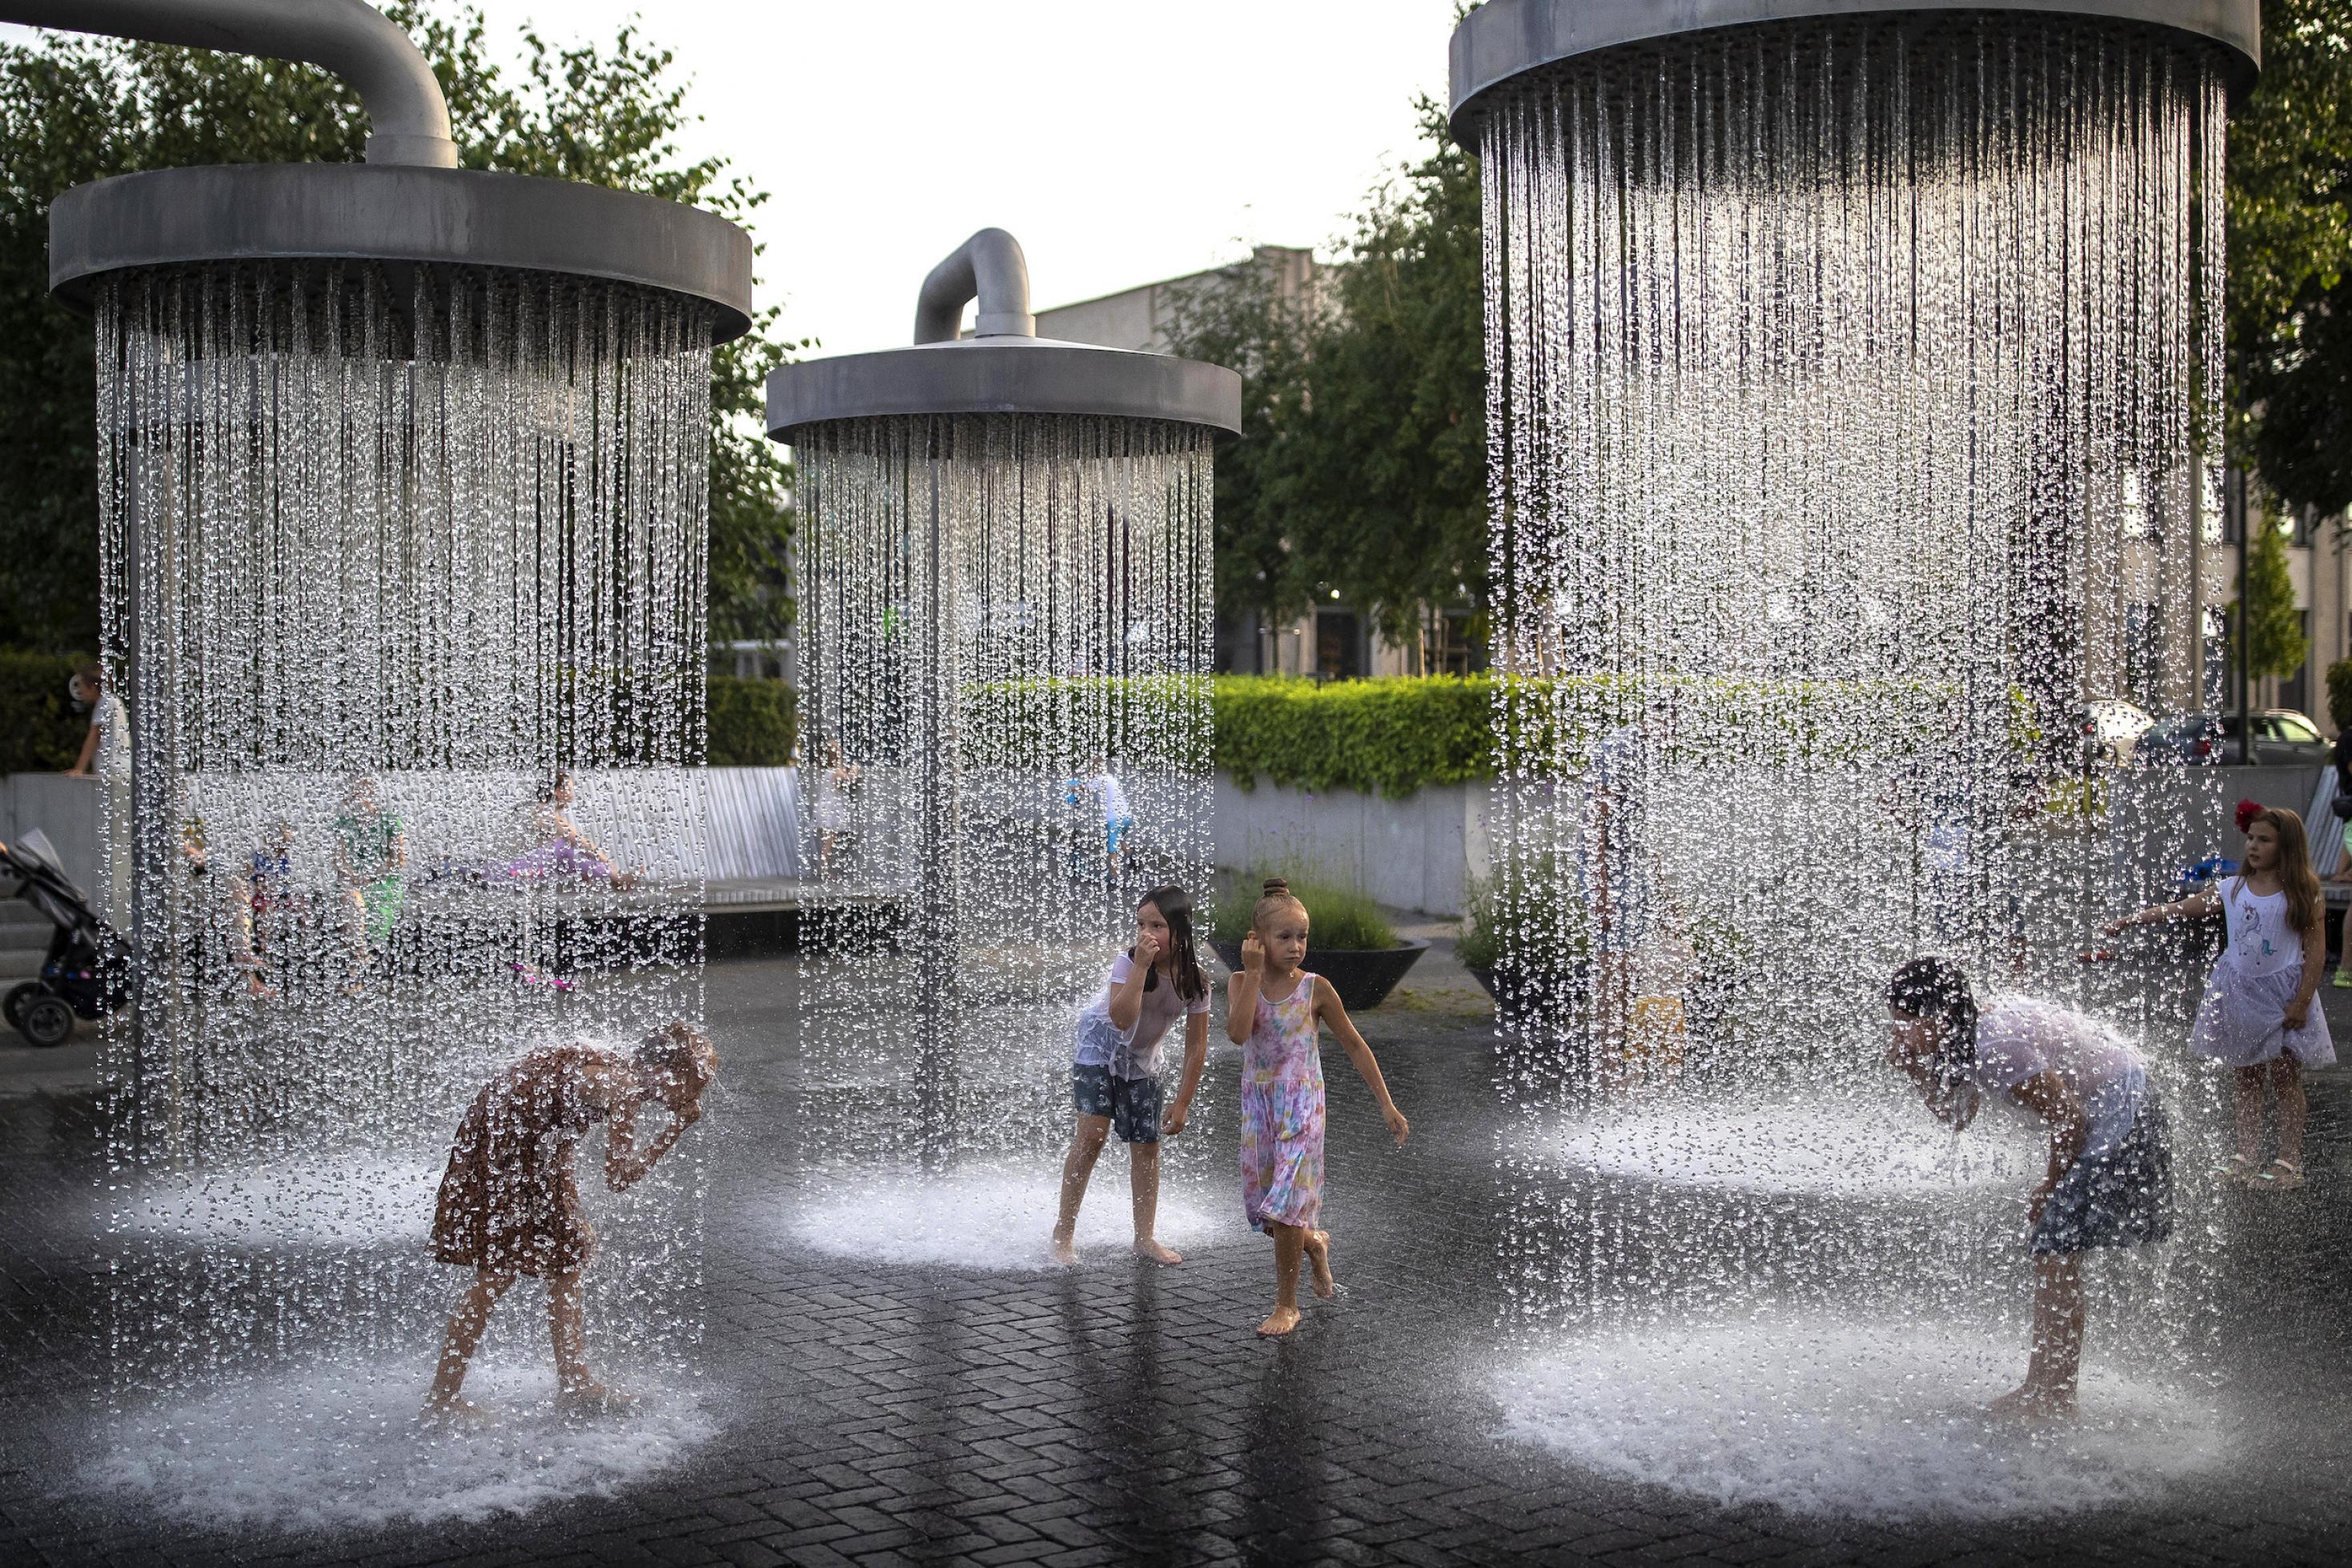 Kinder spielen unter riesigen Duschen, die im Stadtraum von Vilnius installiert sind.